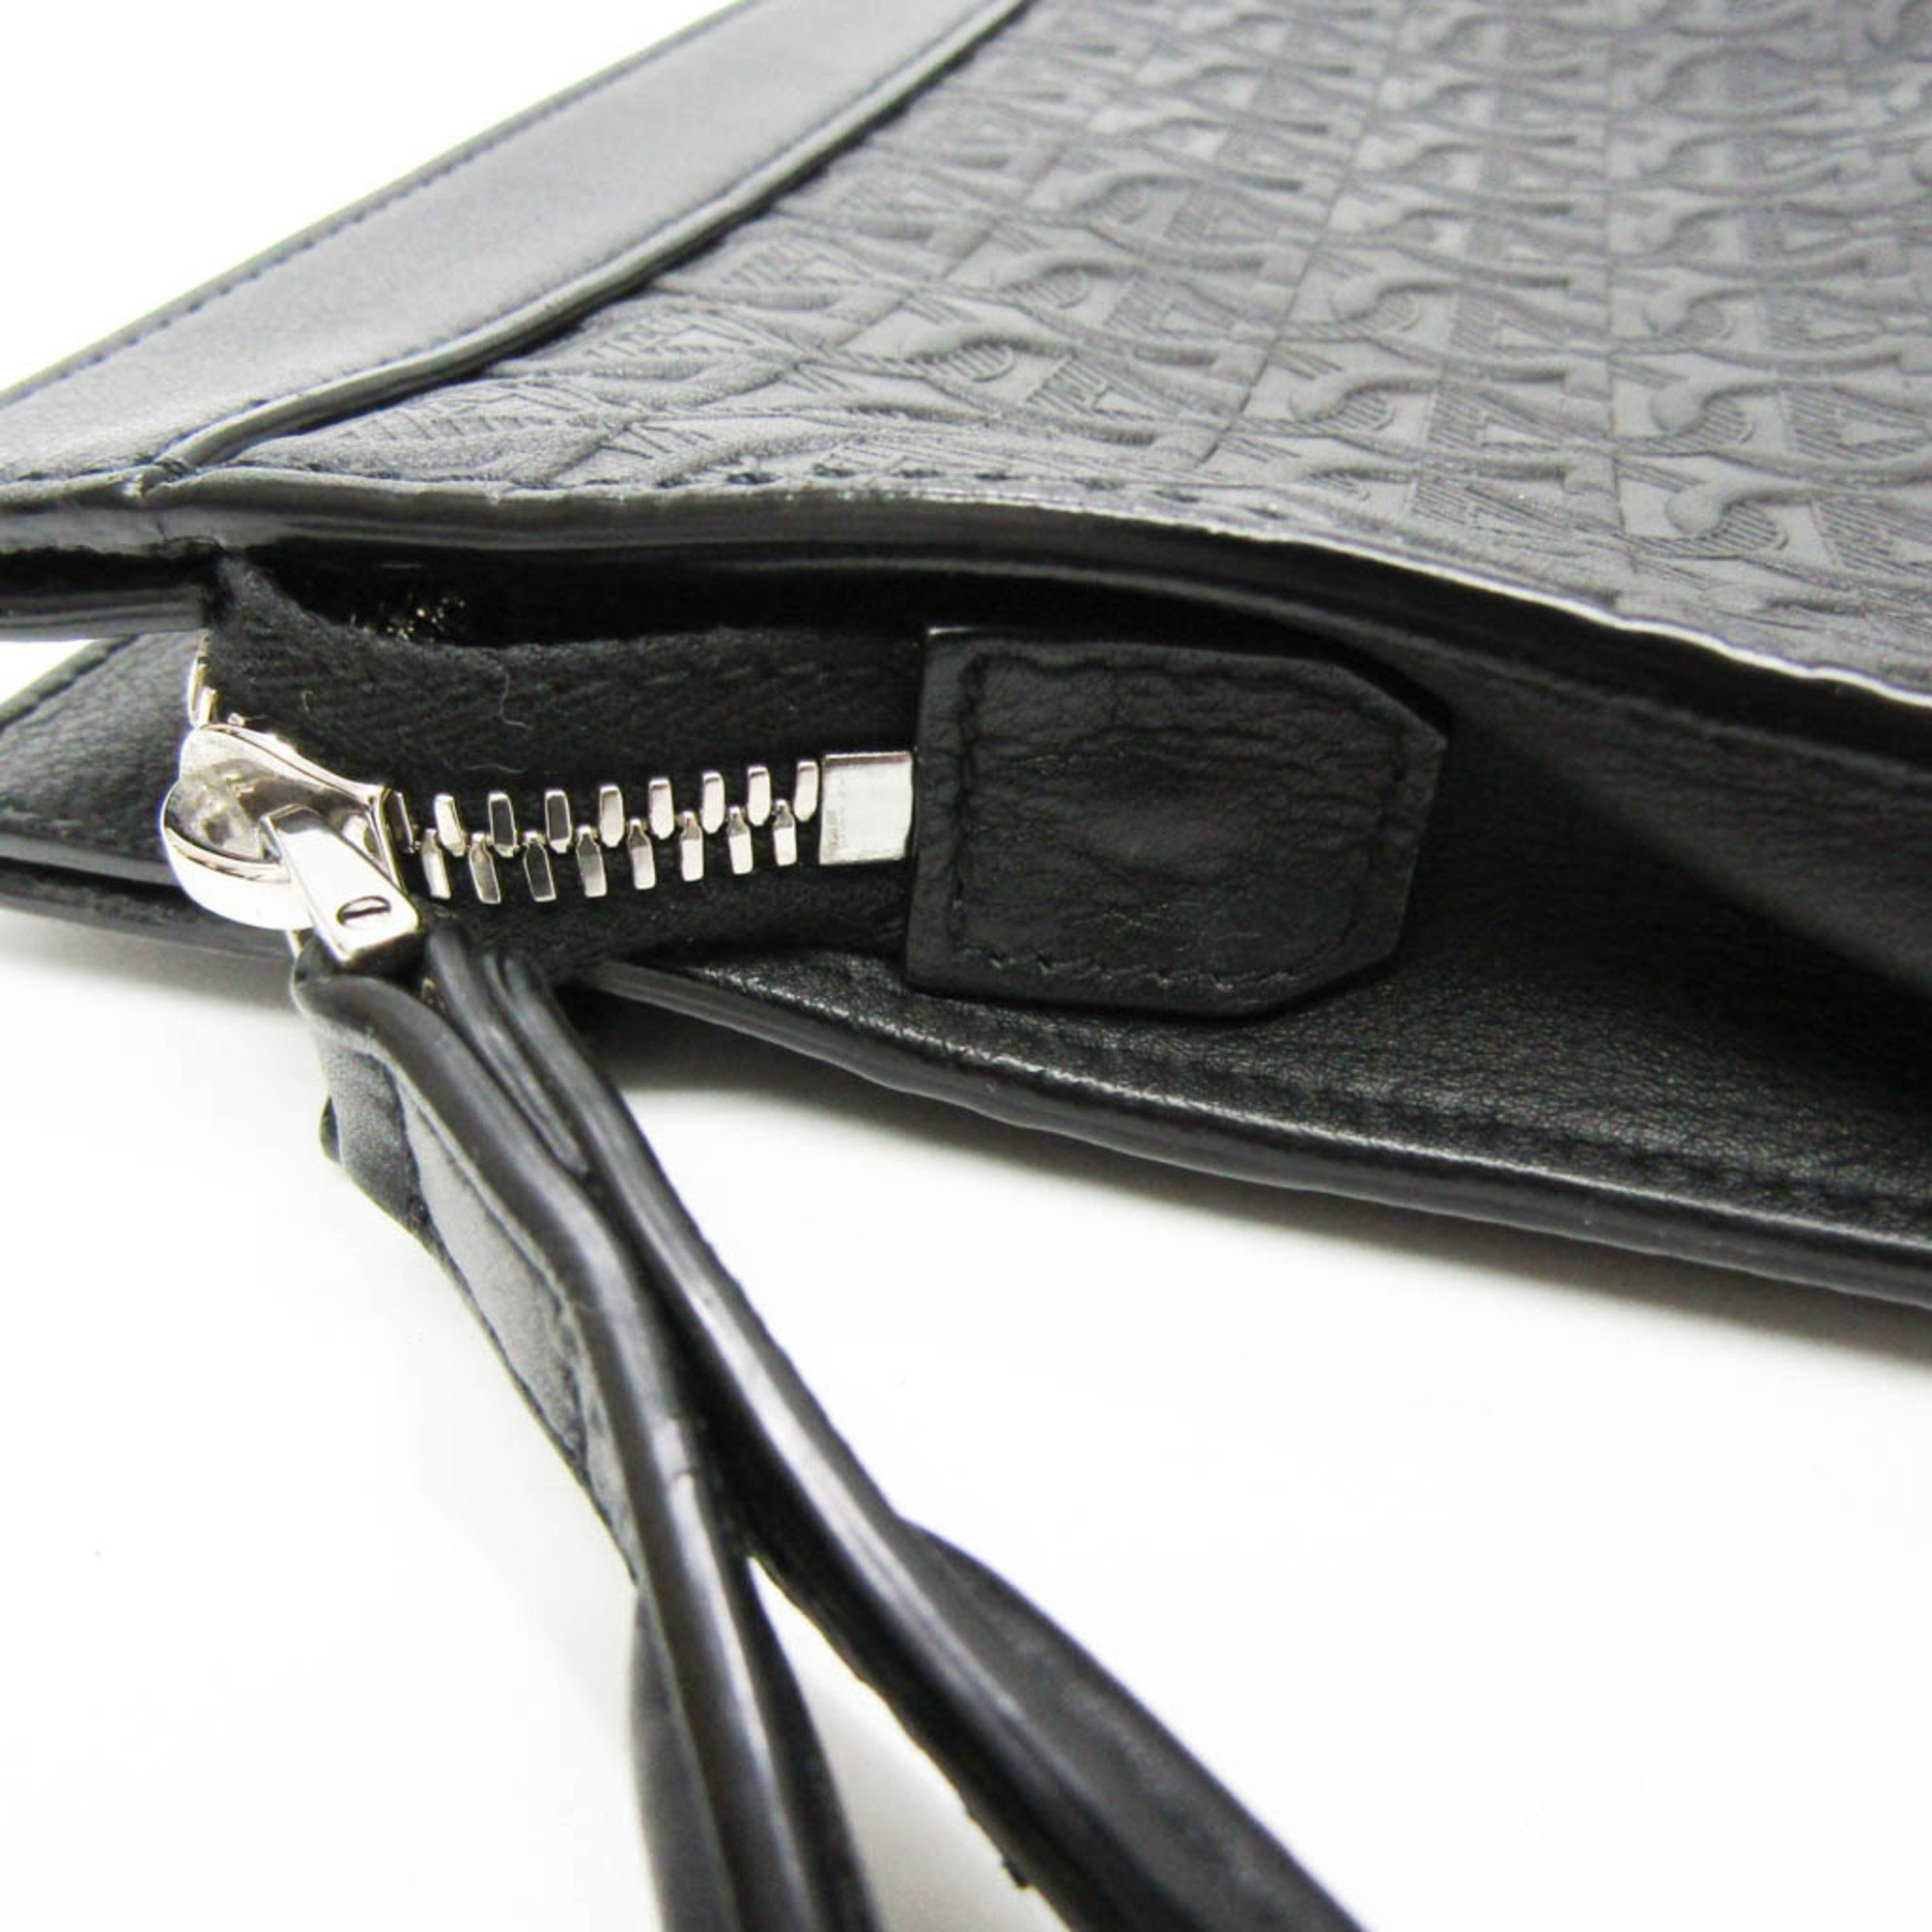 Salvatore Ferragamo Gancini GG-24 A422 Men's Leather Clutch Bag Black